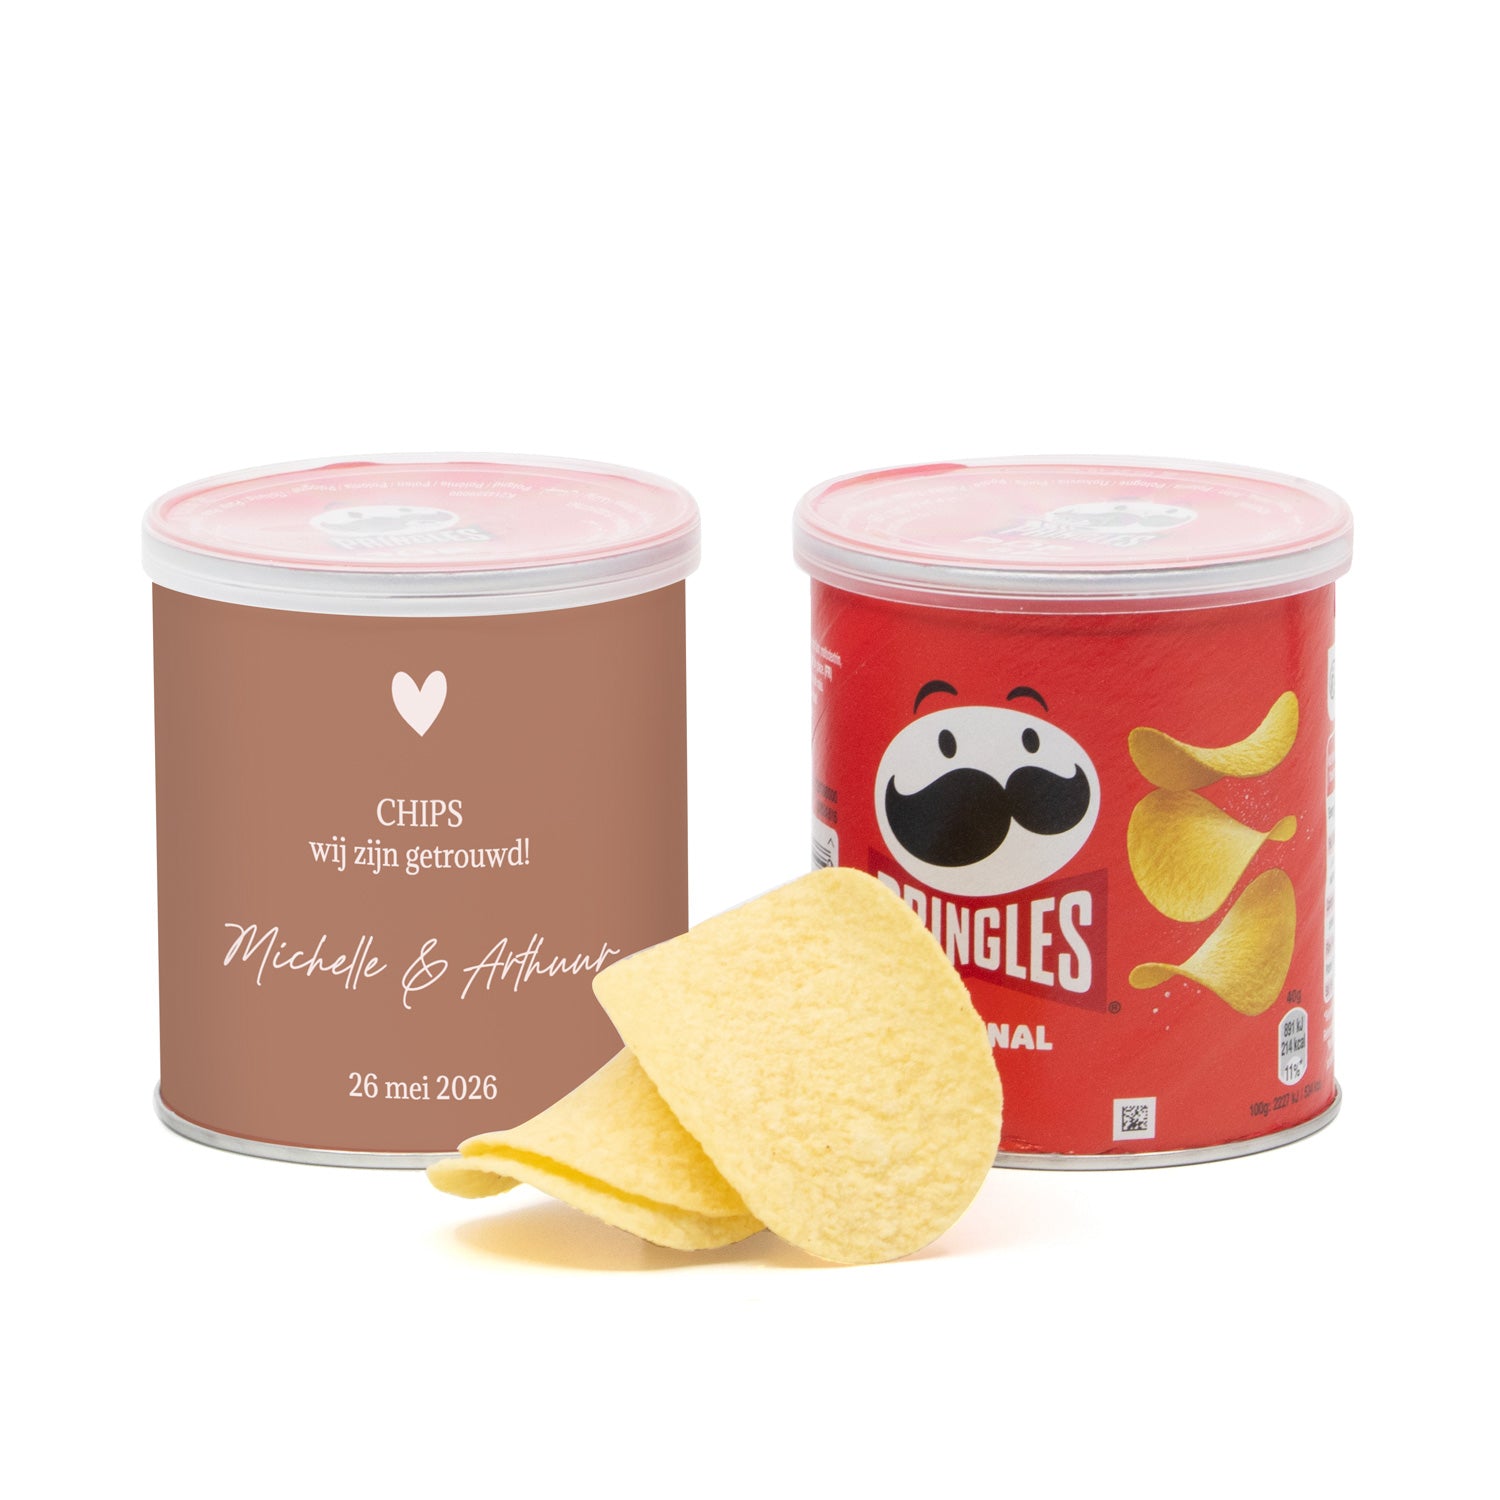 Oh chips! Wij zijn getrouwd Pringles 40 gram - Trouwen - Bedankjes.nl